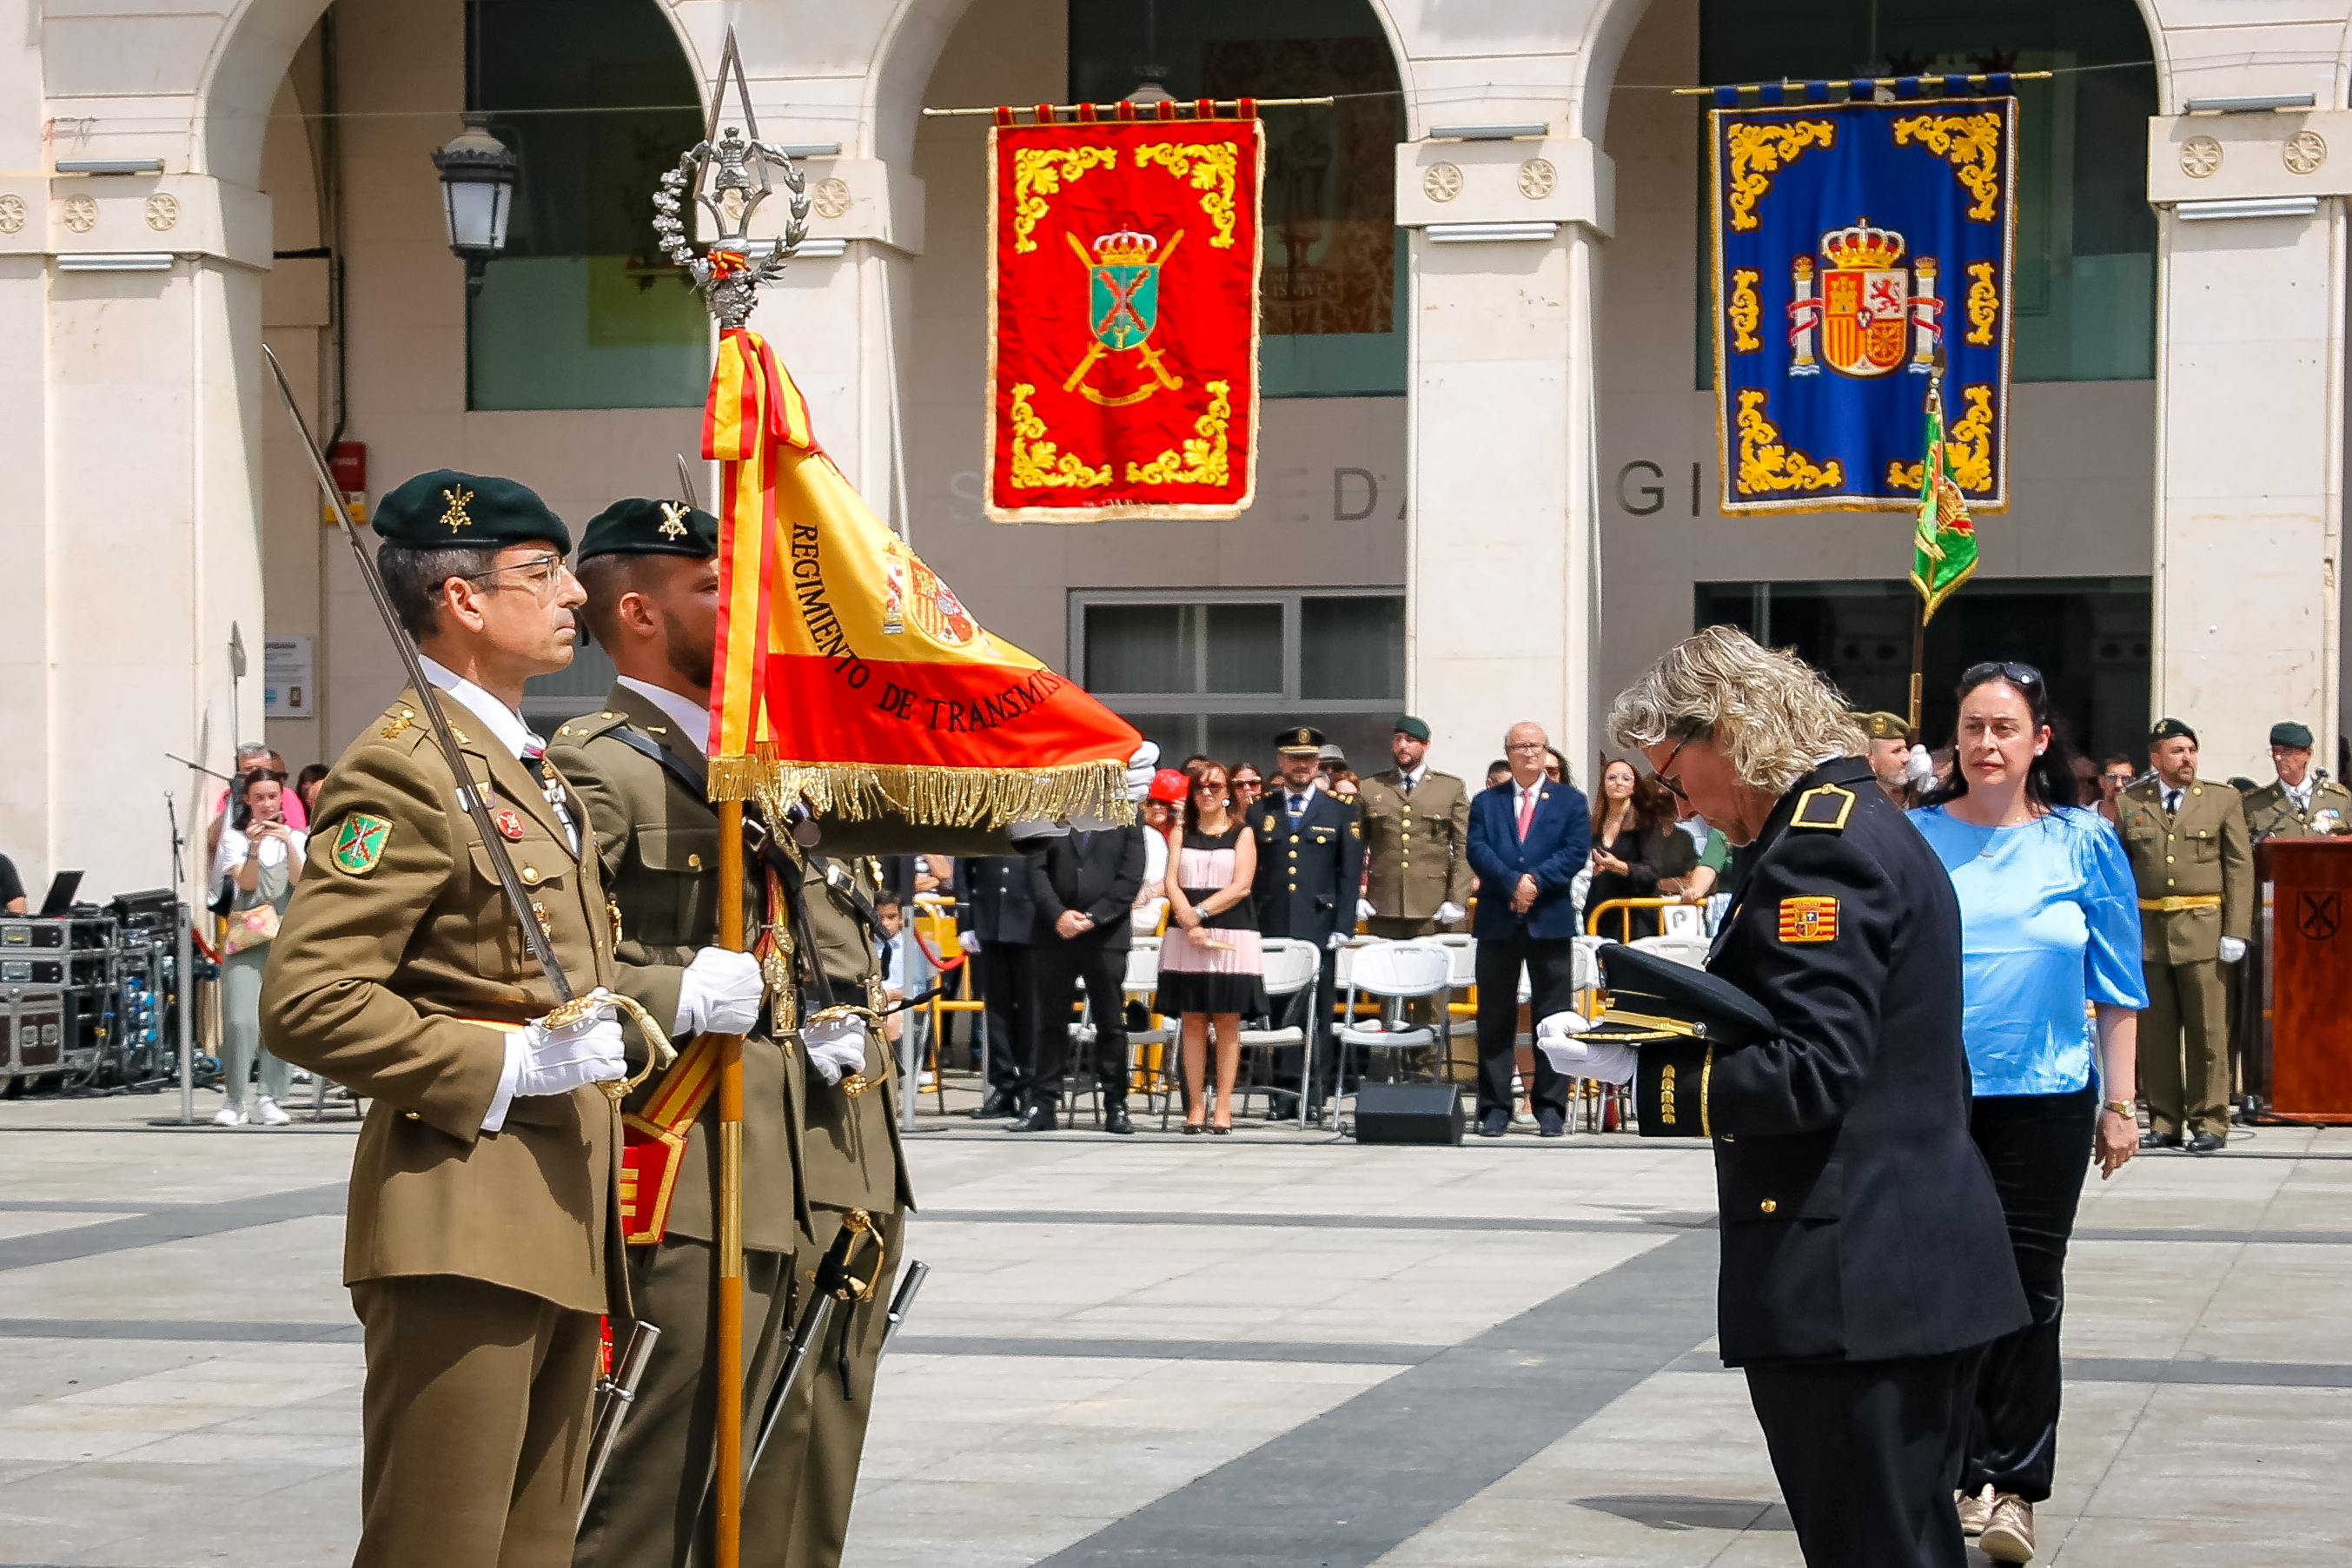 Jura de Bandera personal civil Huesca 10 de junio de 2023